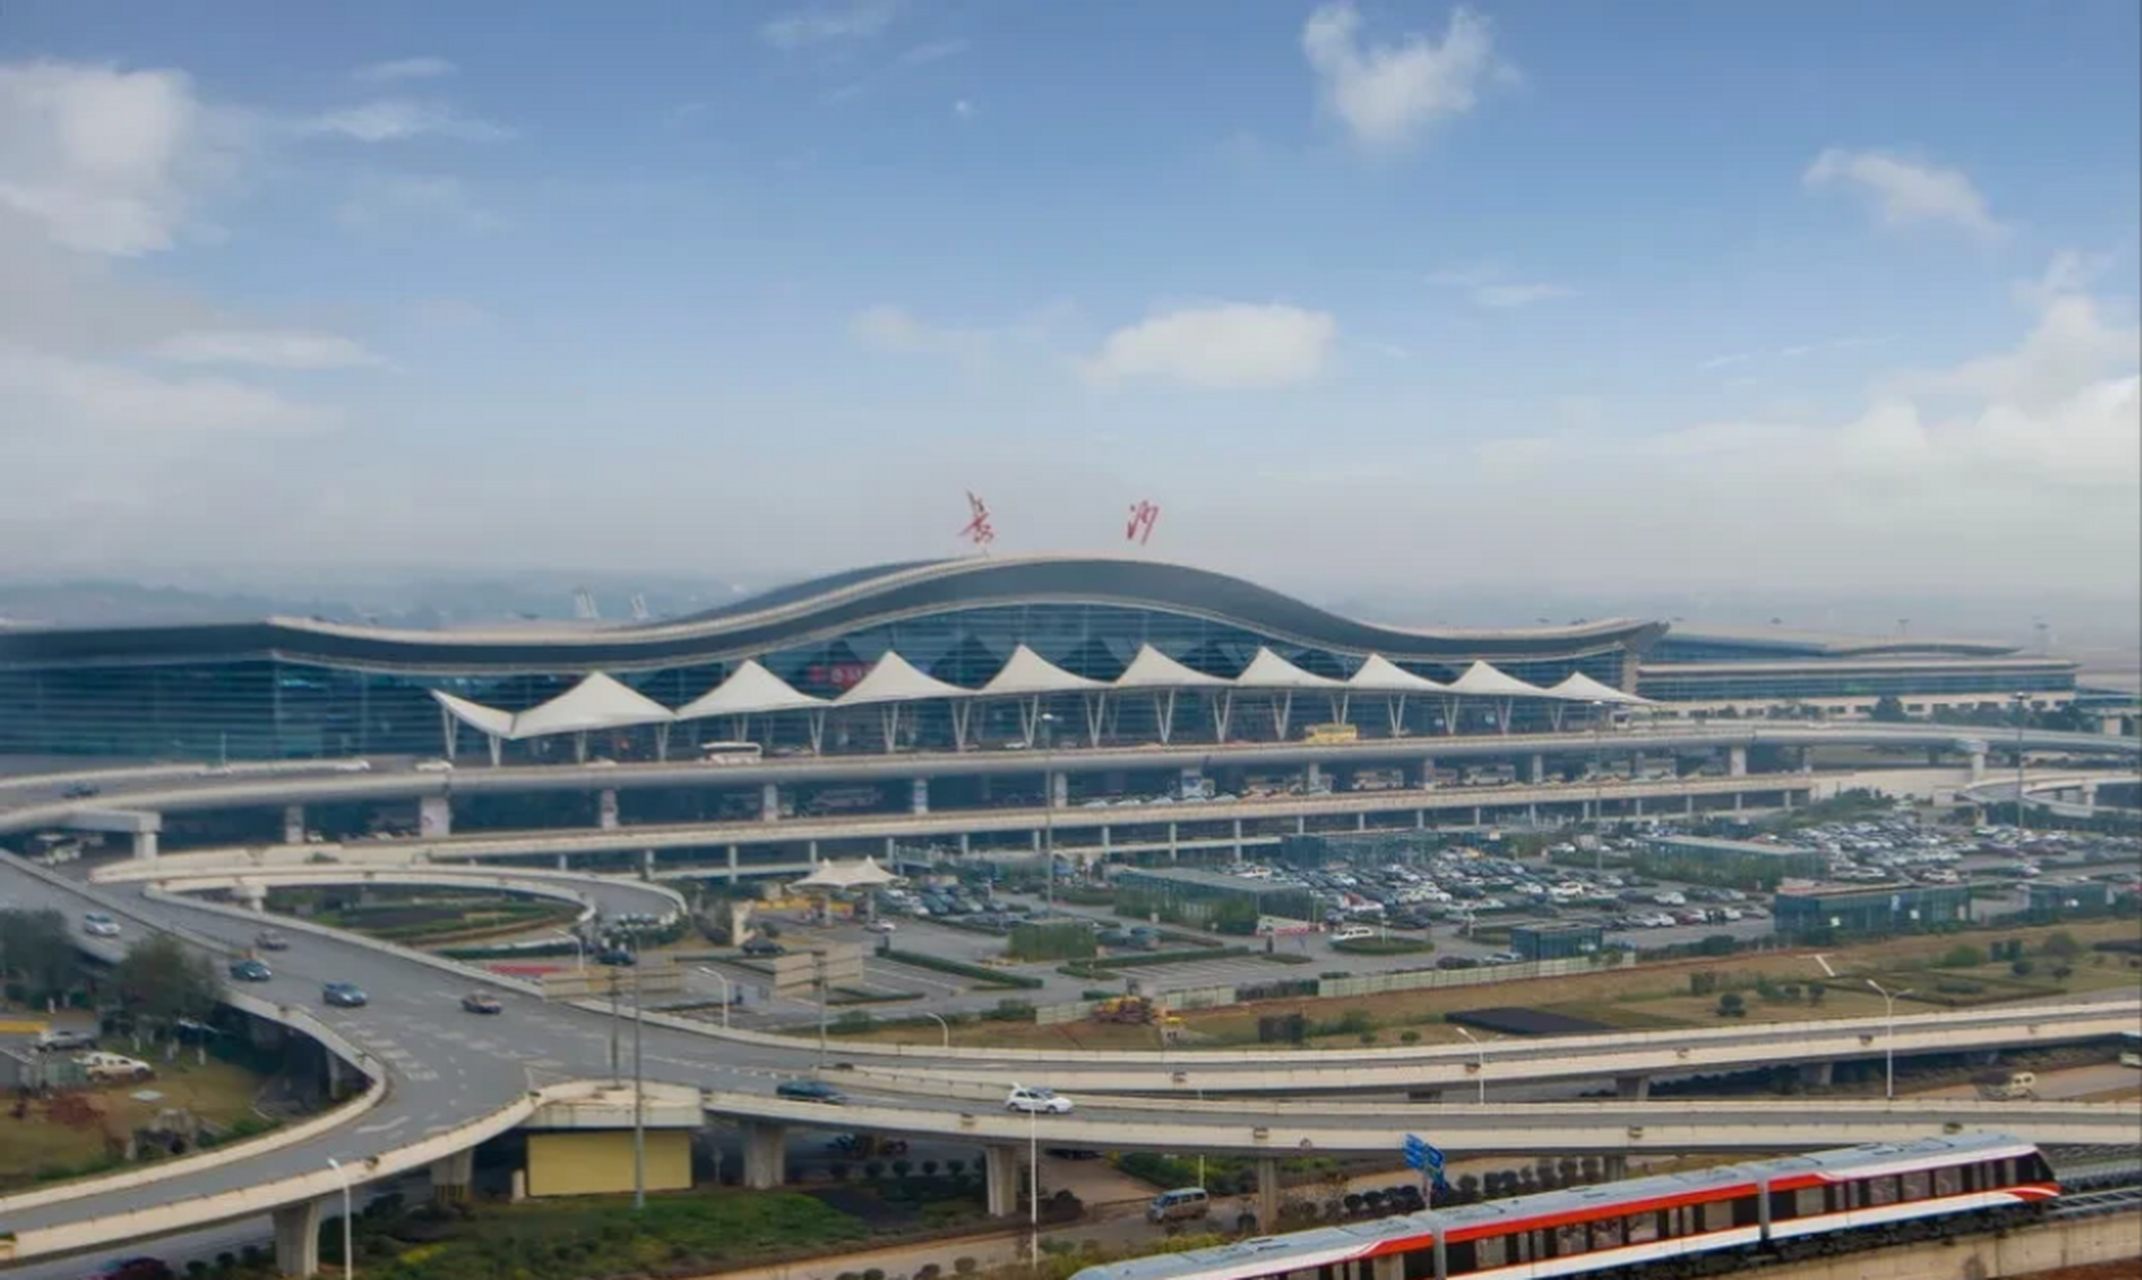 前五个月,长沙黄花机场率先在中部地区实现旅客吞吐量突破一千万,把